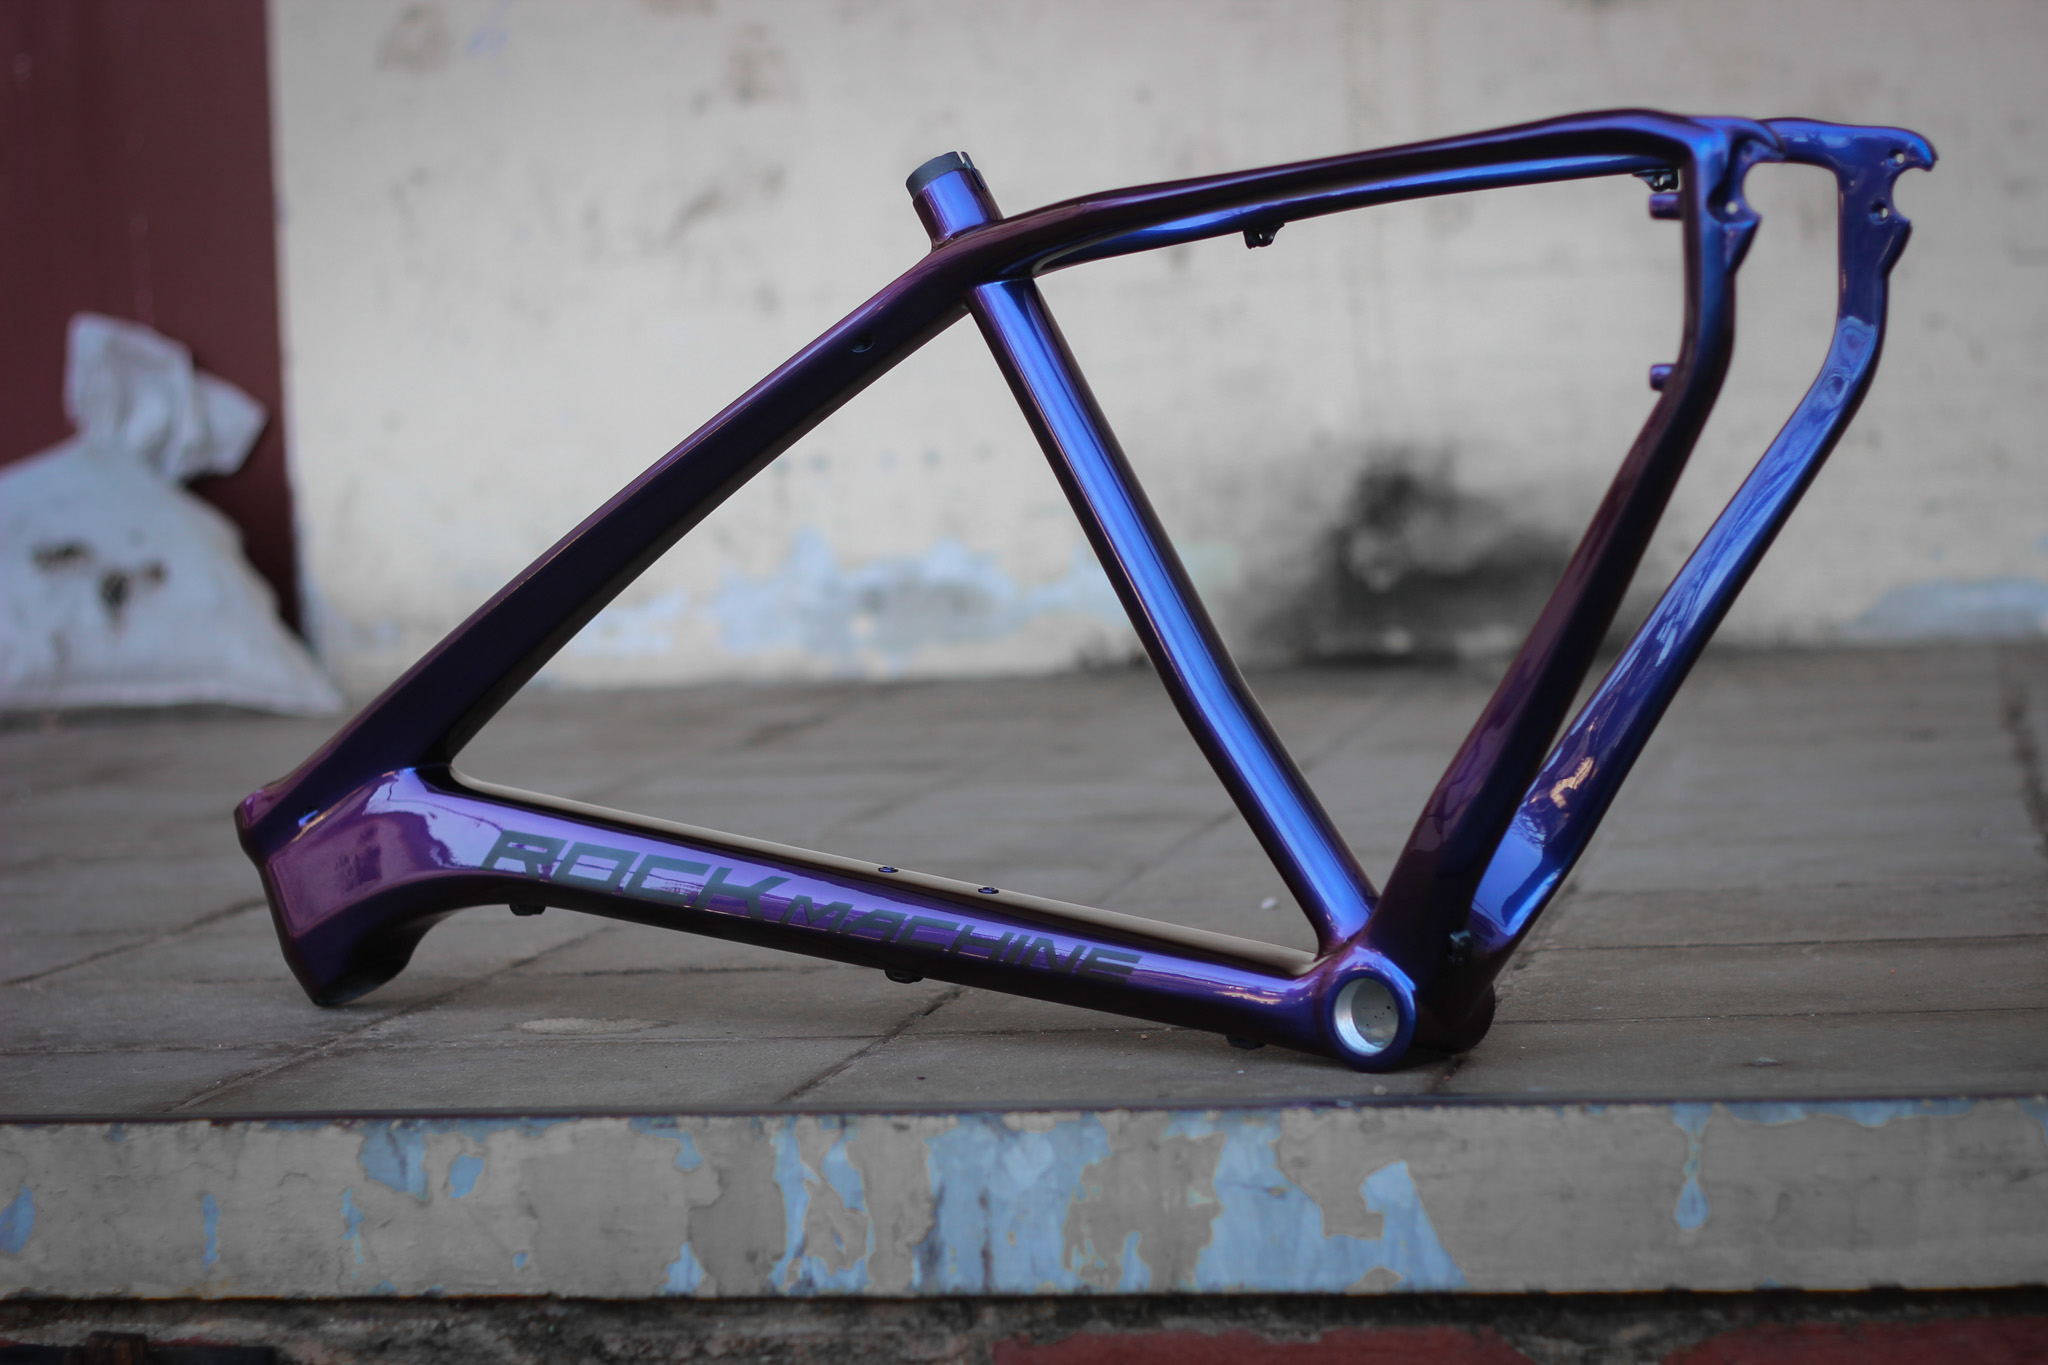 repainting bike frame